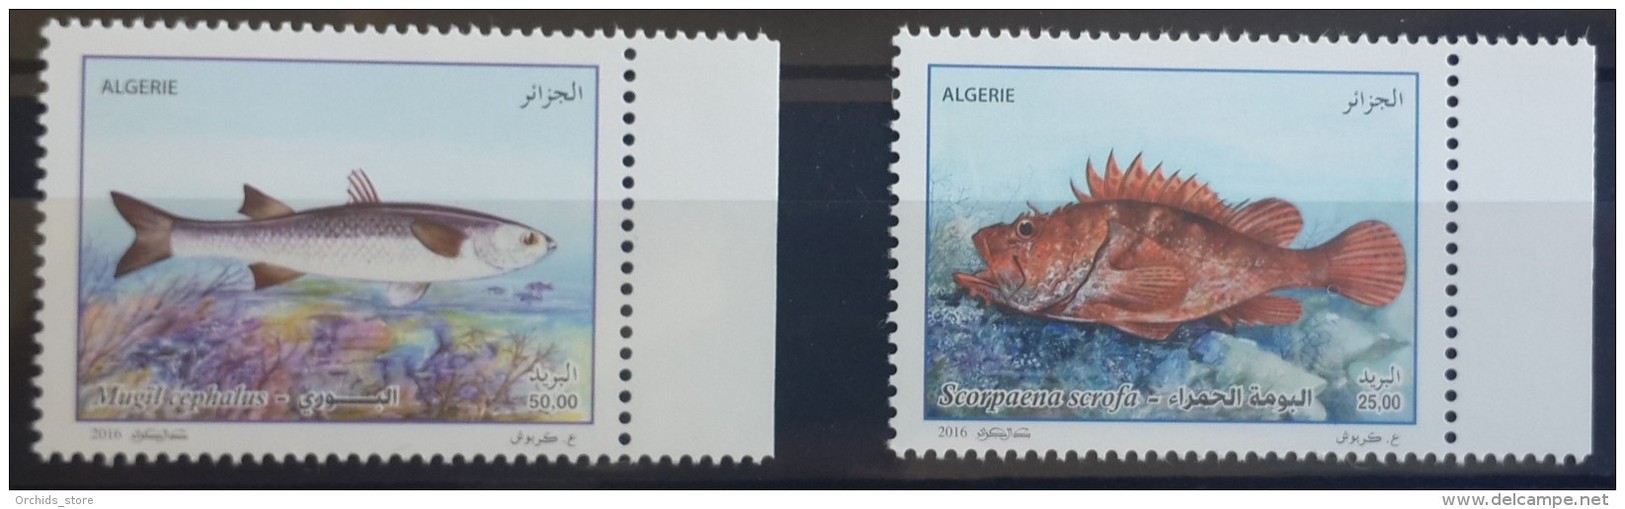 Algeria 2016 NEW MNH Complete Set 2v. - Fishes - Algeria (1962-...)